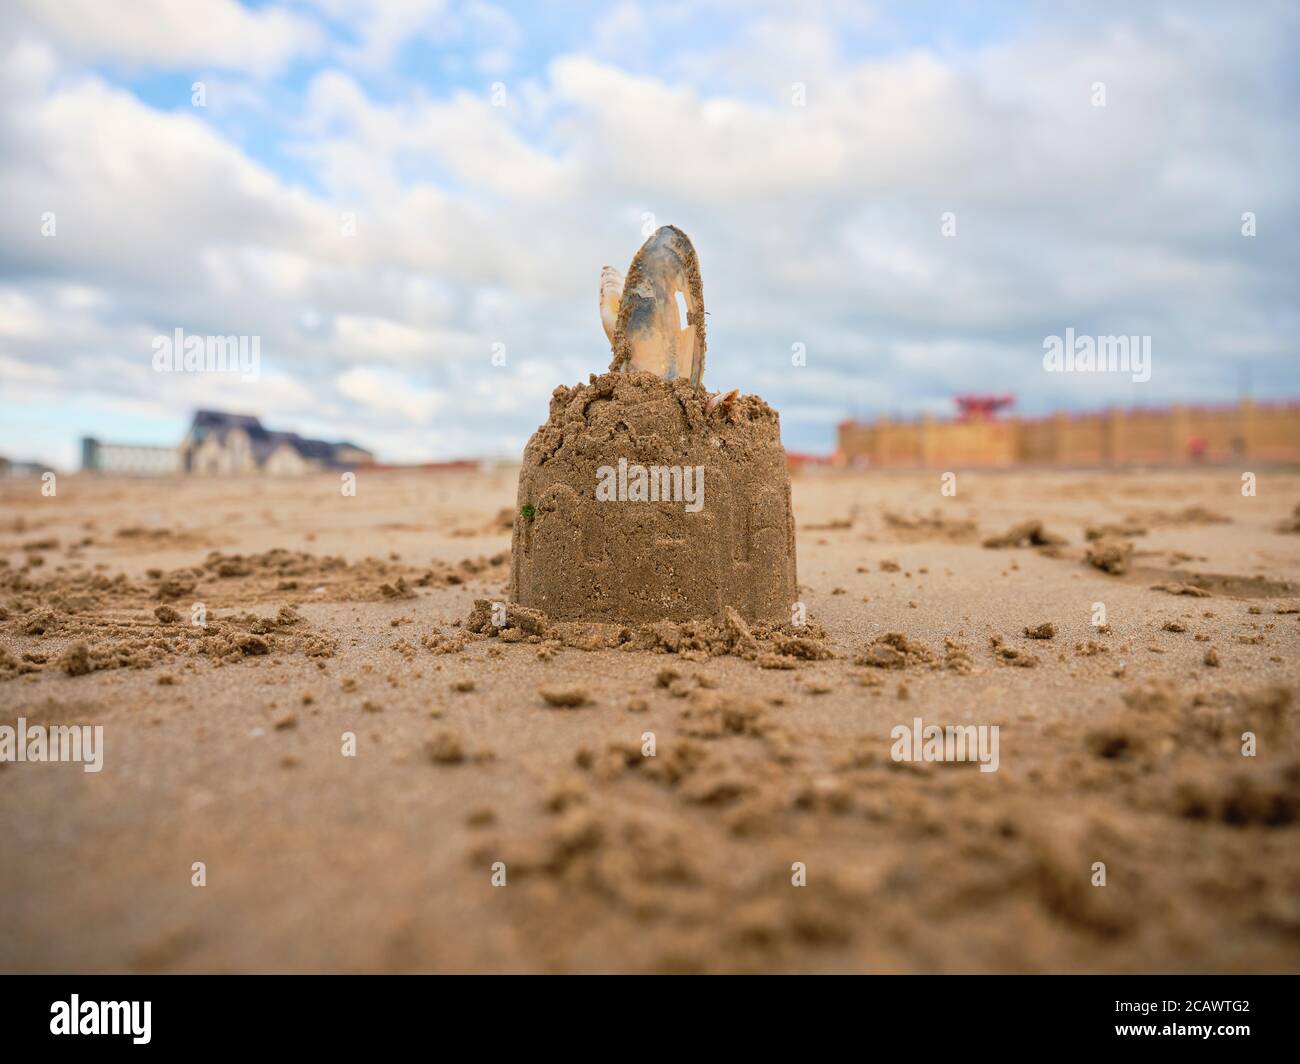 06 AOÛT 2020. RHYL, PAYS DE GALLES. ROYAUME-UNI. Un château de sable avec une coquille au sommet sur les sables dorés de la plage de Rhyl, au pays de Galles. ROYAUME-UNI. Banque D'Images